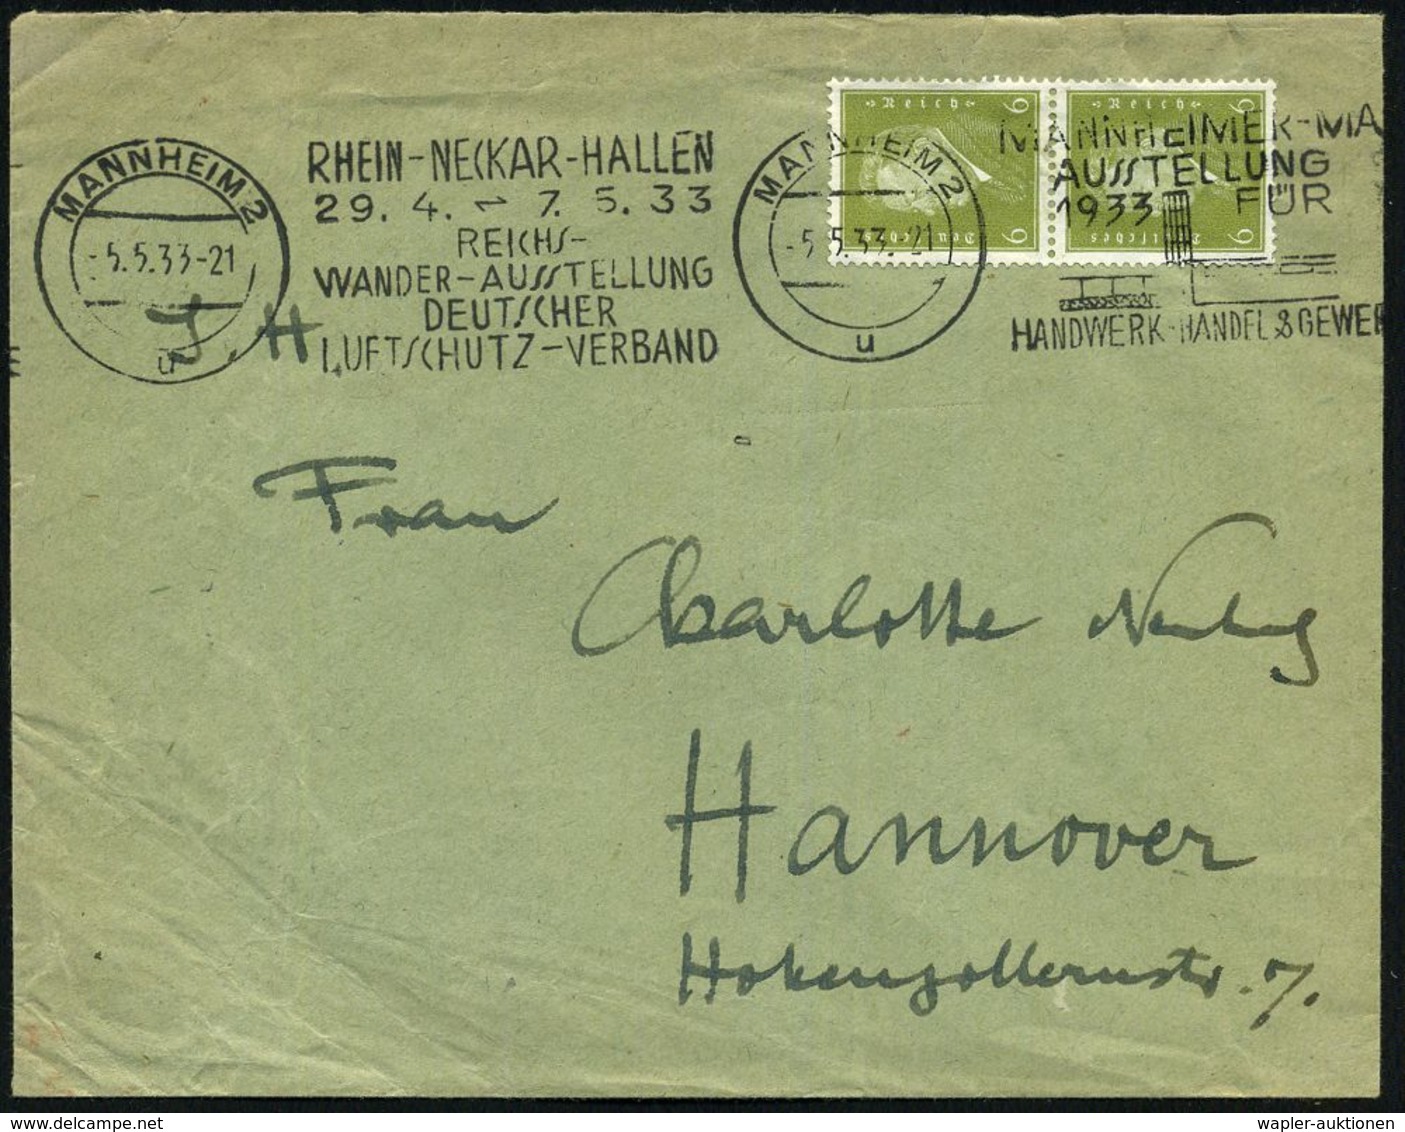 MANNHEIM 2/ U/ RHEIN-NECKAR-HALLEN/ ..REICHS-/ WANDER-AUSST./ DEUTSCHER/ LUFTSCHUTZ-VERBAND 1933 (5.5.) Seltener BdMWSt  - Brandweer